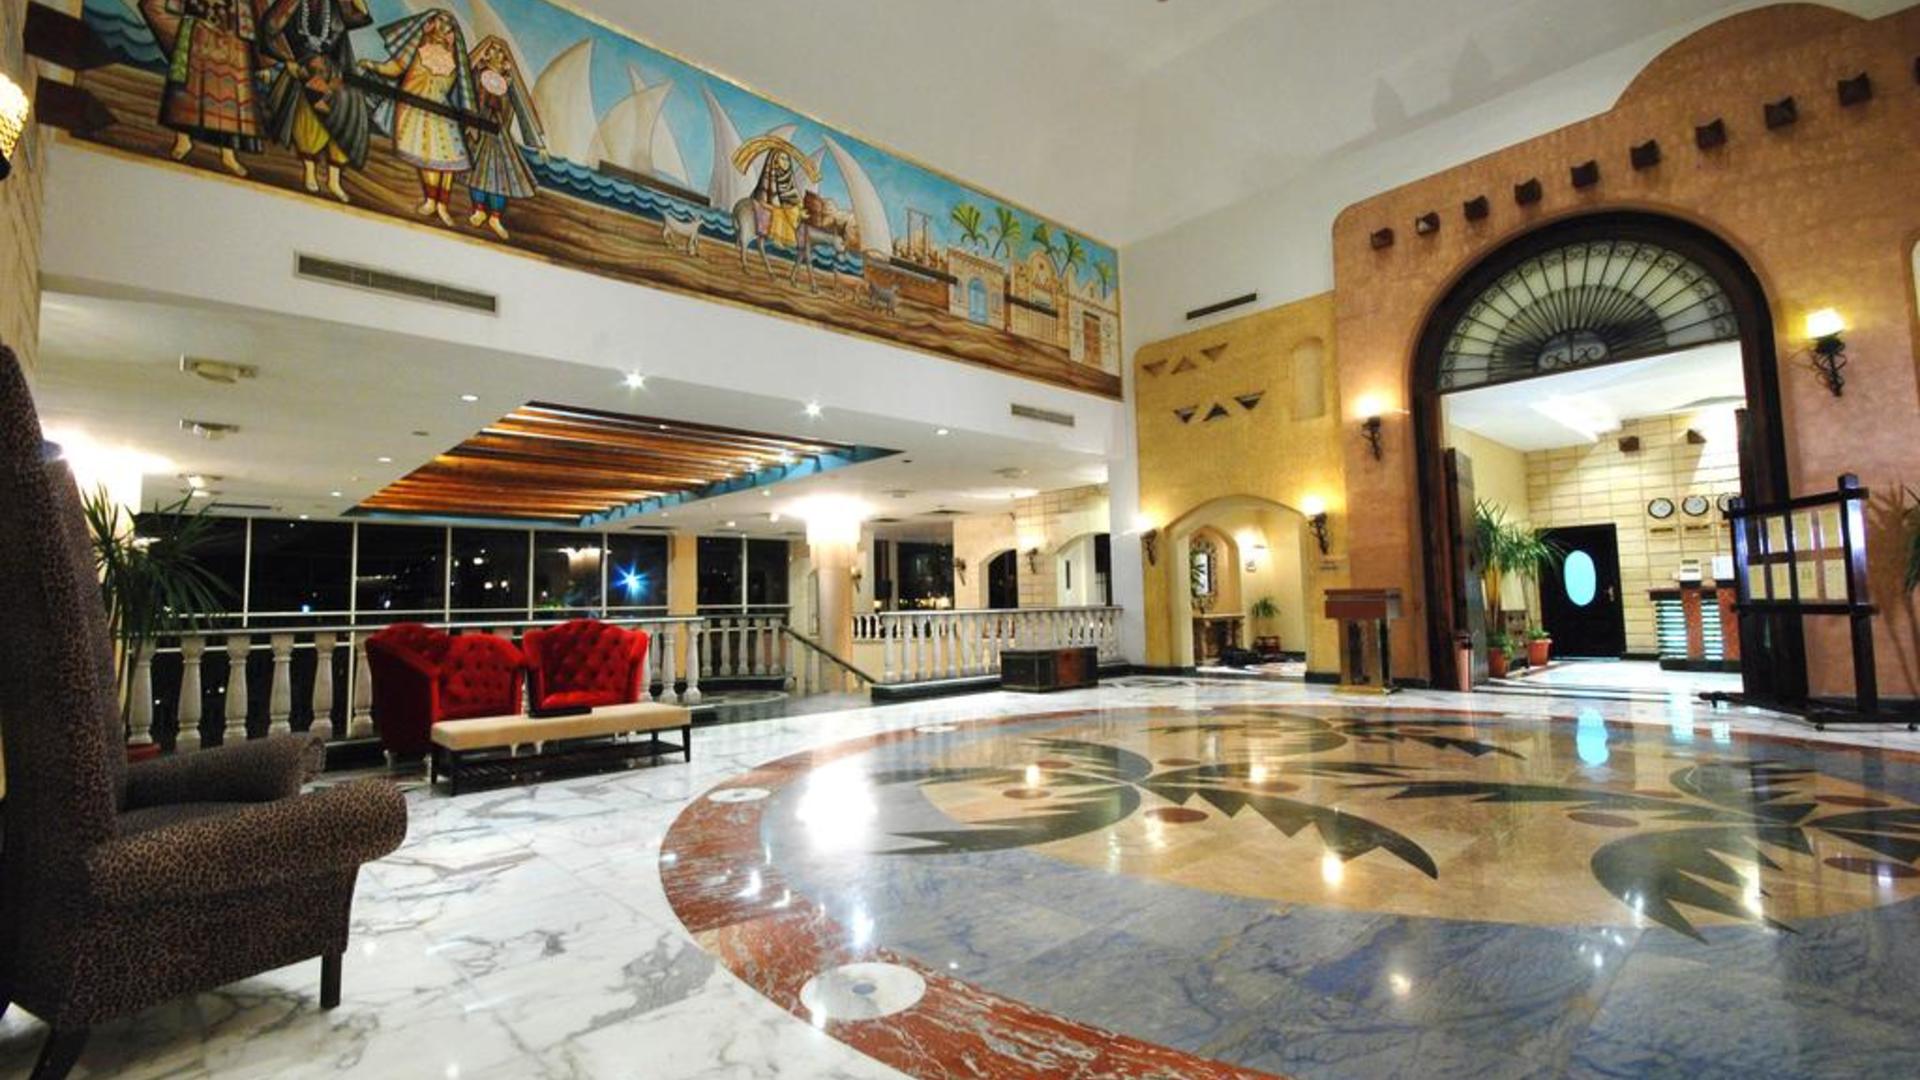 Nubian island отзывы. Отель в шармаль Шейхе нубиан Исланд. Отель Nubian Island 5. Нубиан Айленд 5 Шарм-Эль-Шейх. Nubian Island Hotel Египет Шарм.